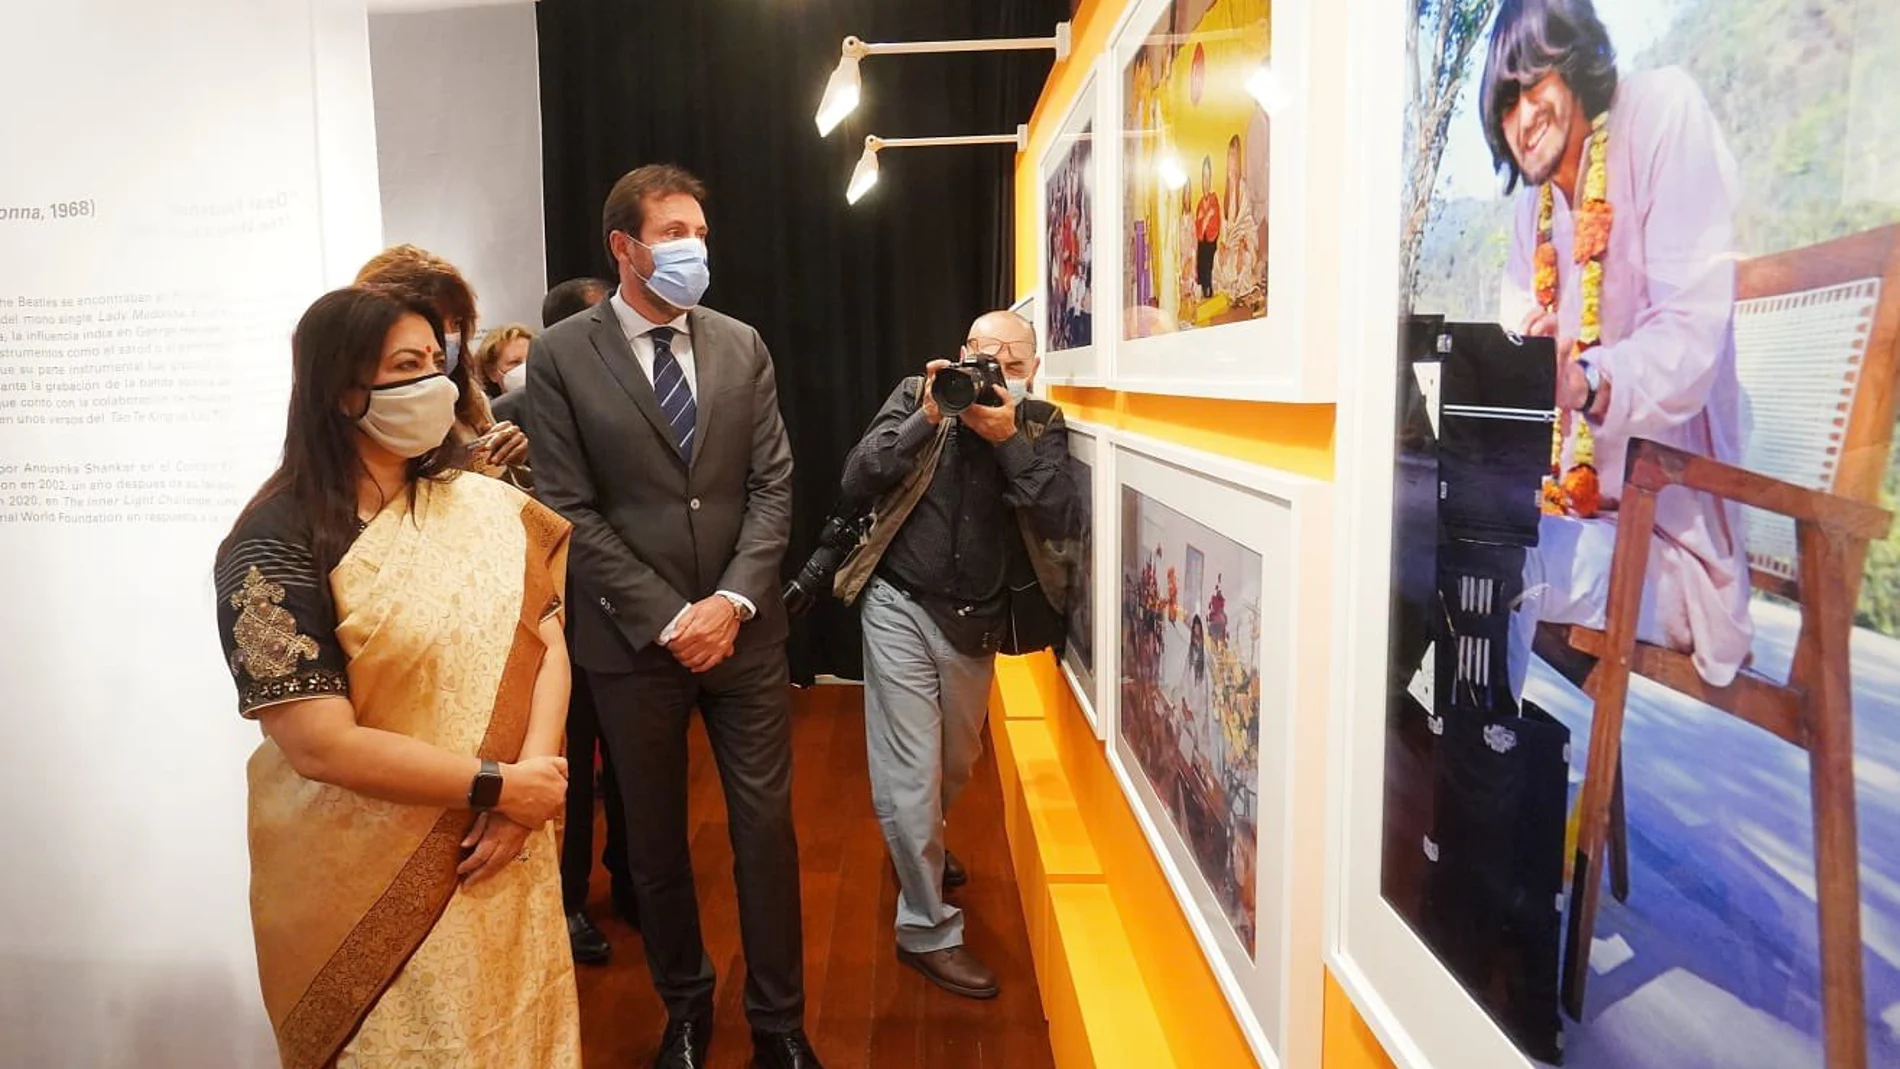 El alcalde de Valladolid, Óscar Puente, visita la exposición "The Beatles and India" junto aa ministra de Estado de Asuntos Exteriores y Cultura de India, Meenakashi Lehki